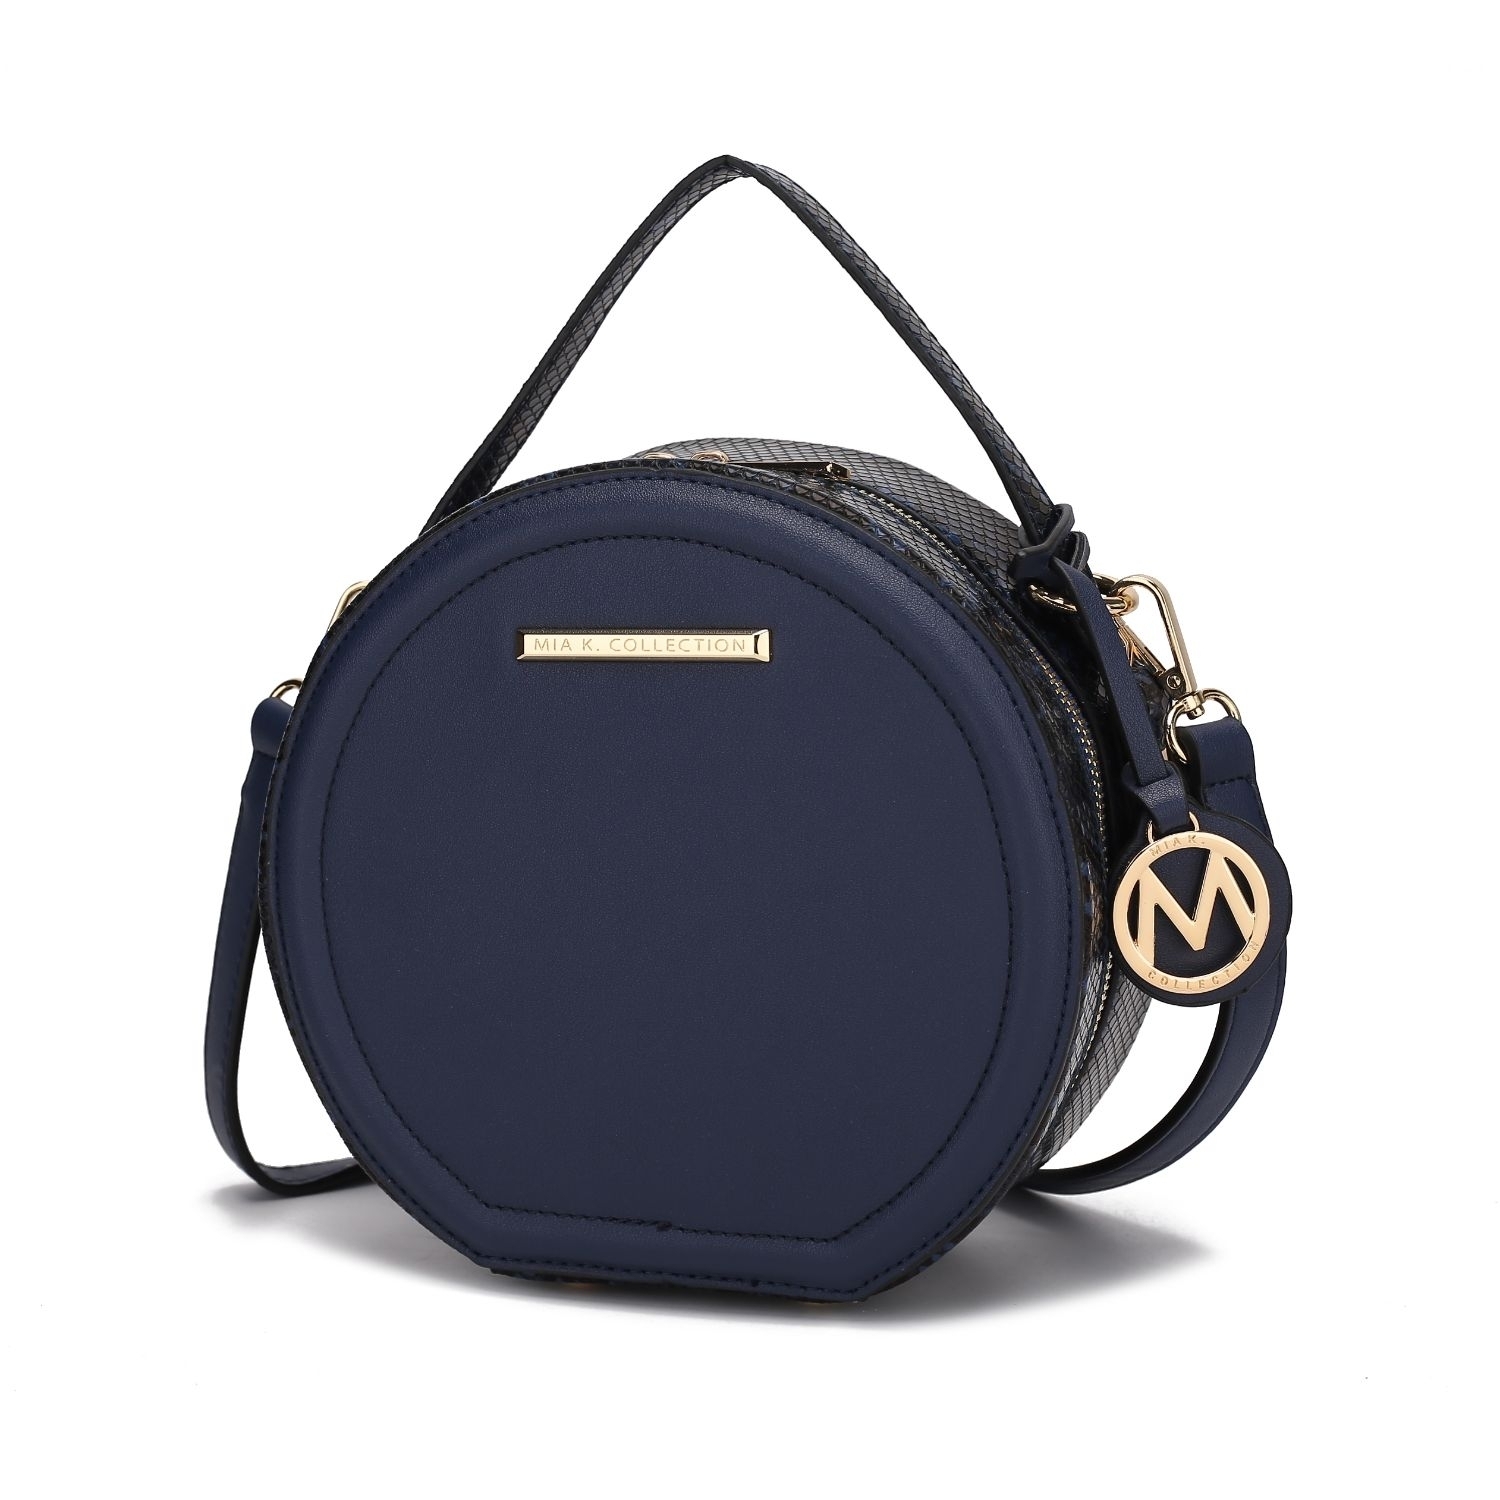 MKF Collection Mallory Handbag Crossbody By Mia K. - Navy